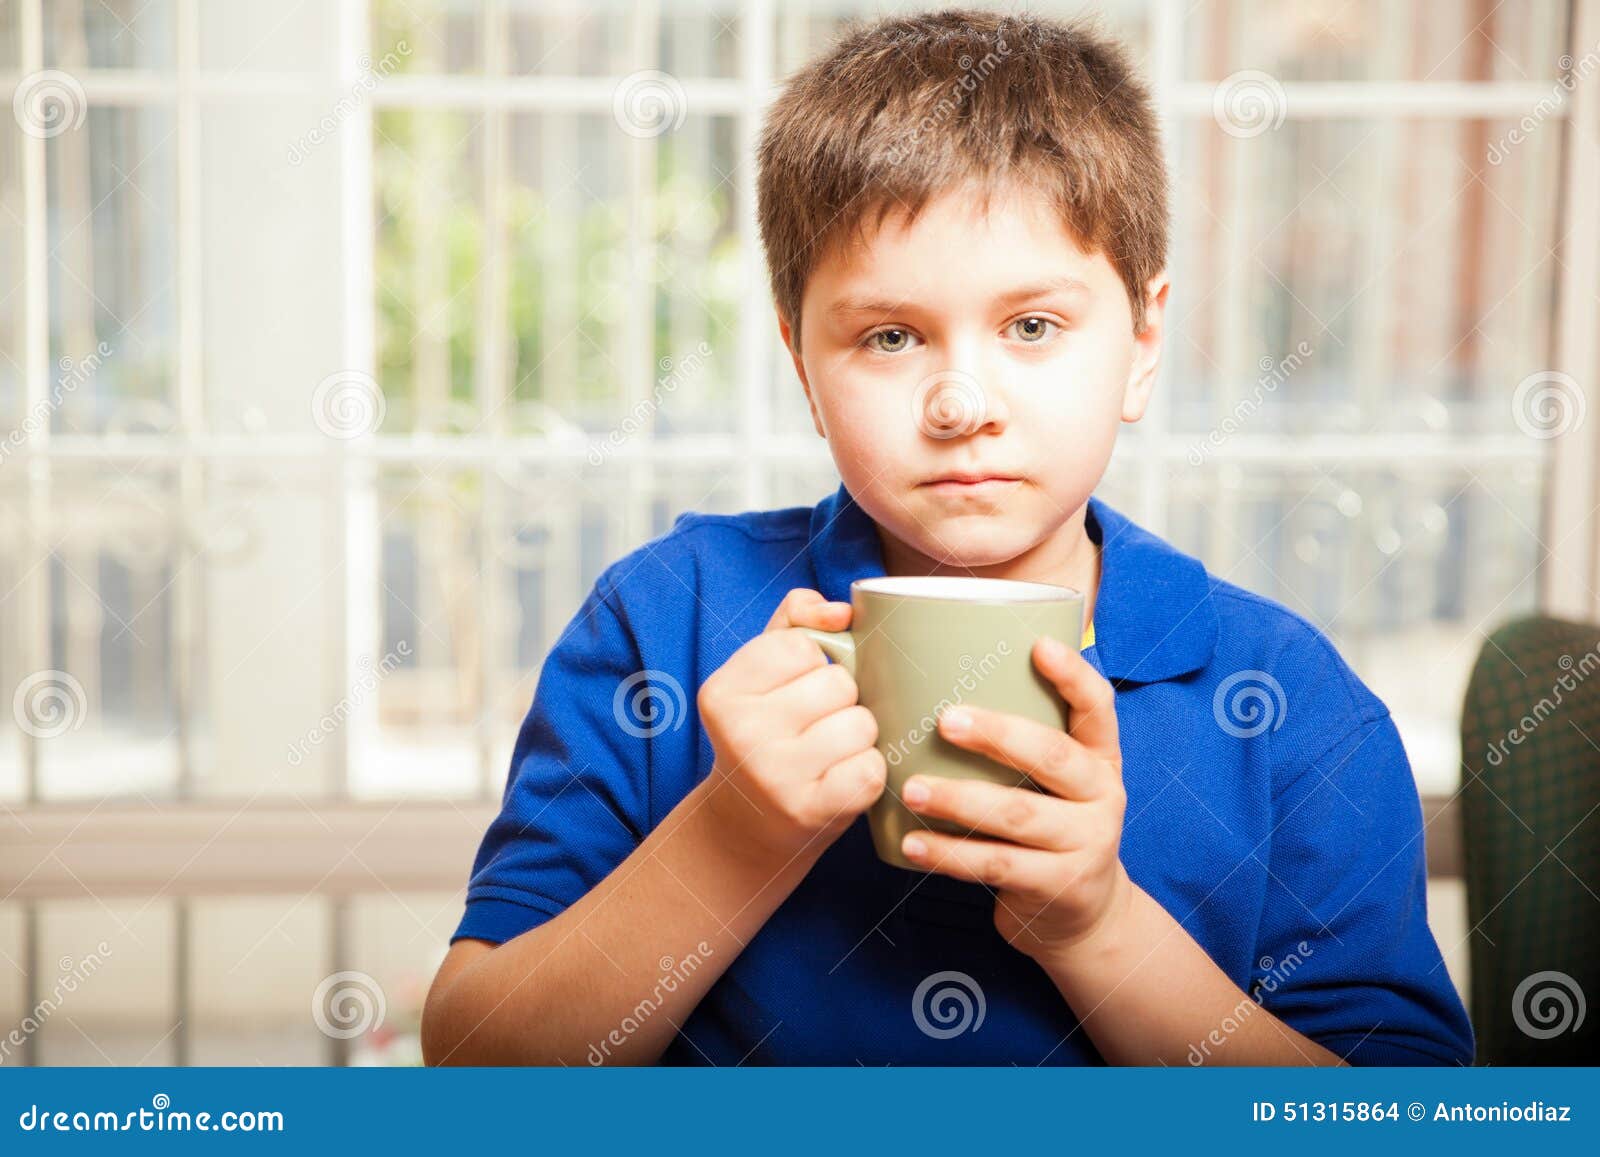 Можно подросткам пить кофе. Подростки пьют чай. Подростки пьют кофе. Мальчик пьет кофе. Фотография подростков пьющих кофе.